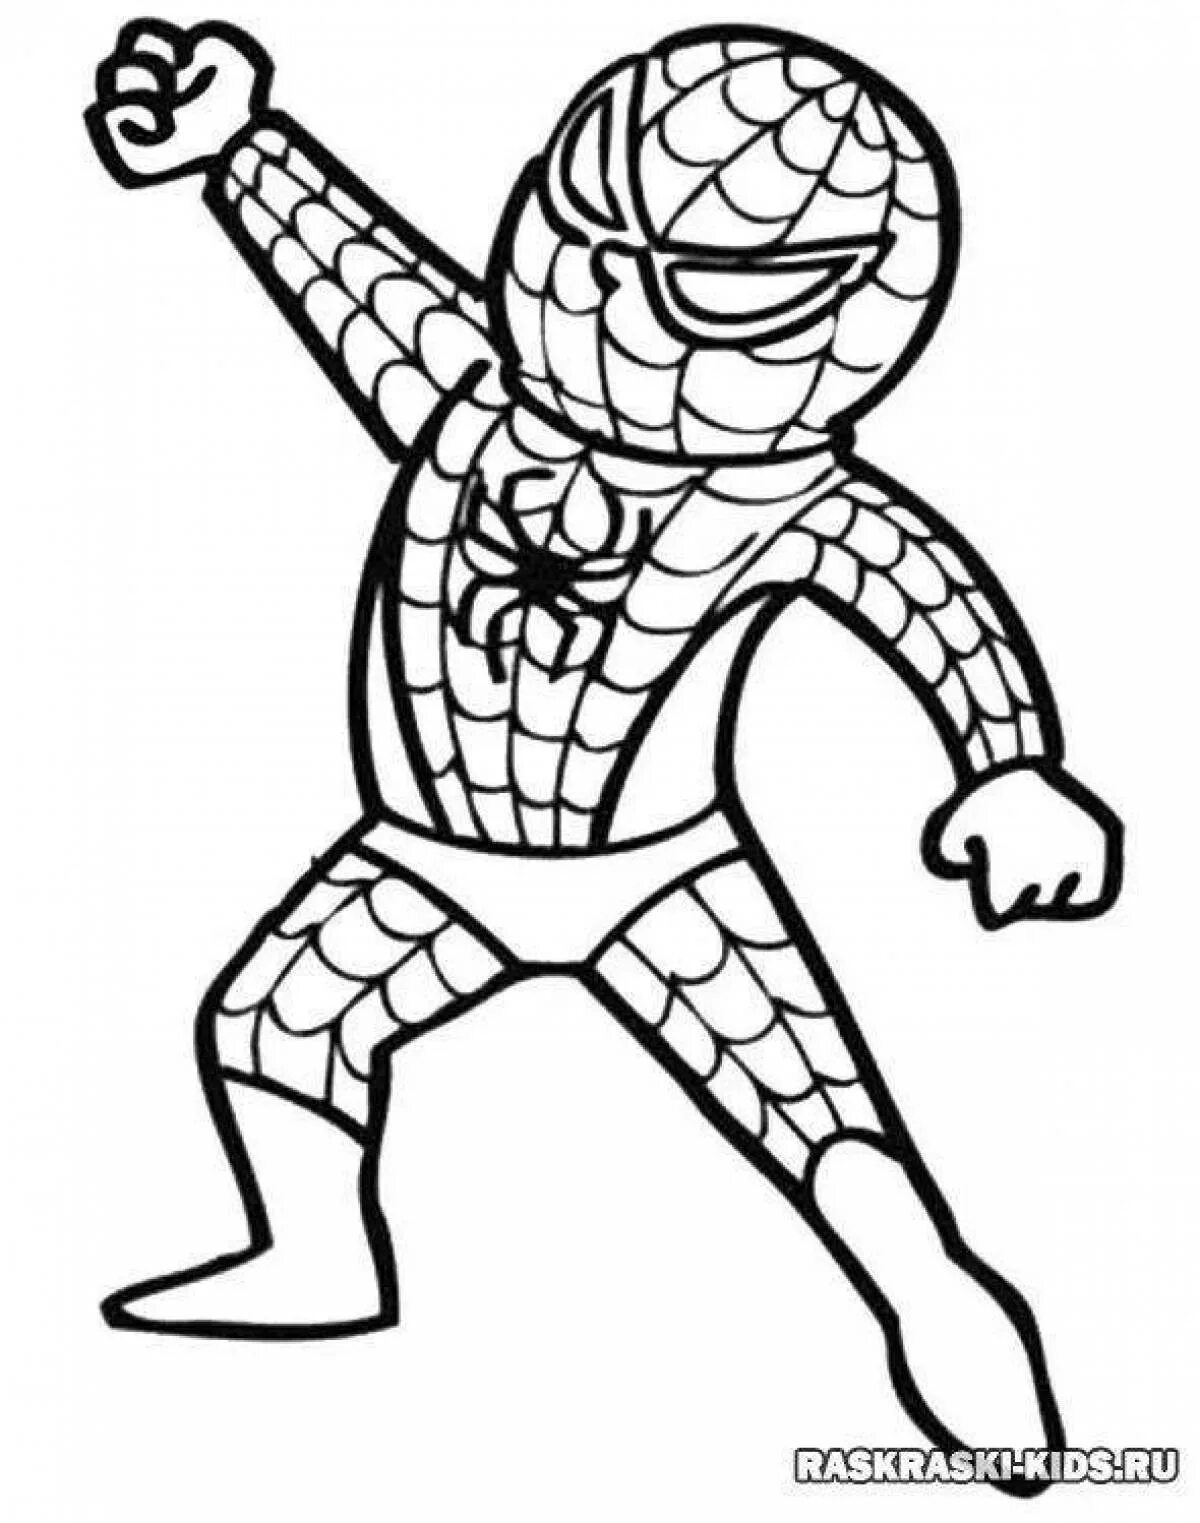 Легко 8 для мальчиков. Раскраска Супергерои Марвел человек паук. Человек паук раскраска для детей. Супергерой раскраска для детей. Человек паук разукрашка для детей.